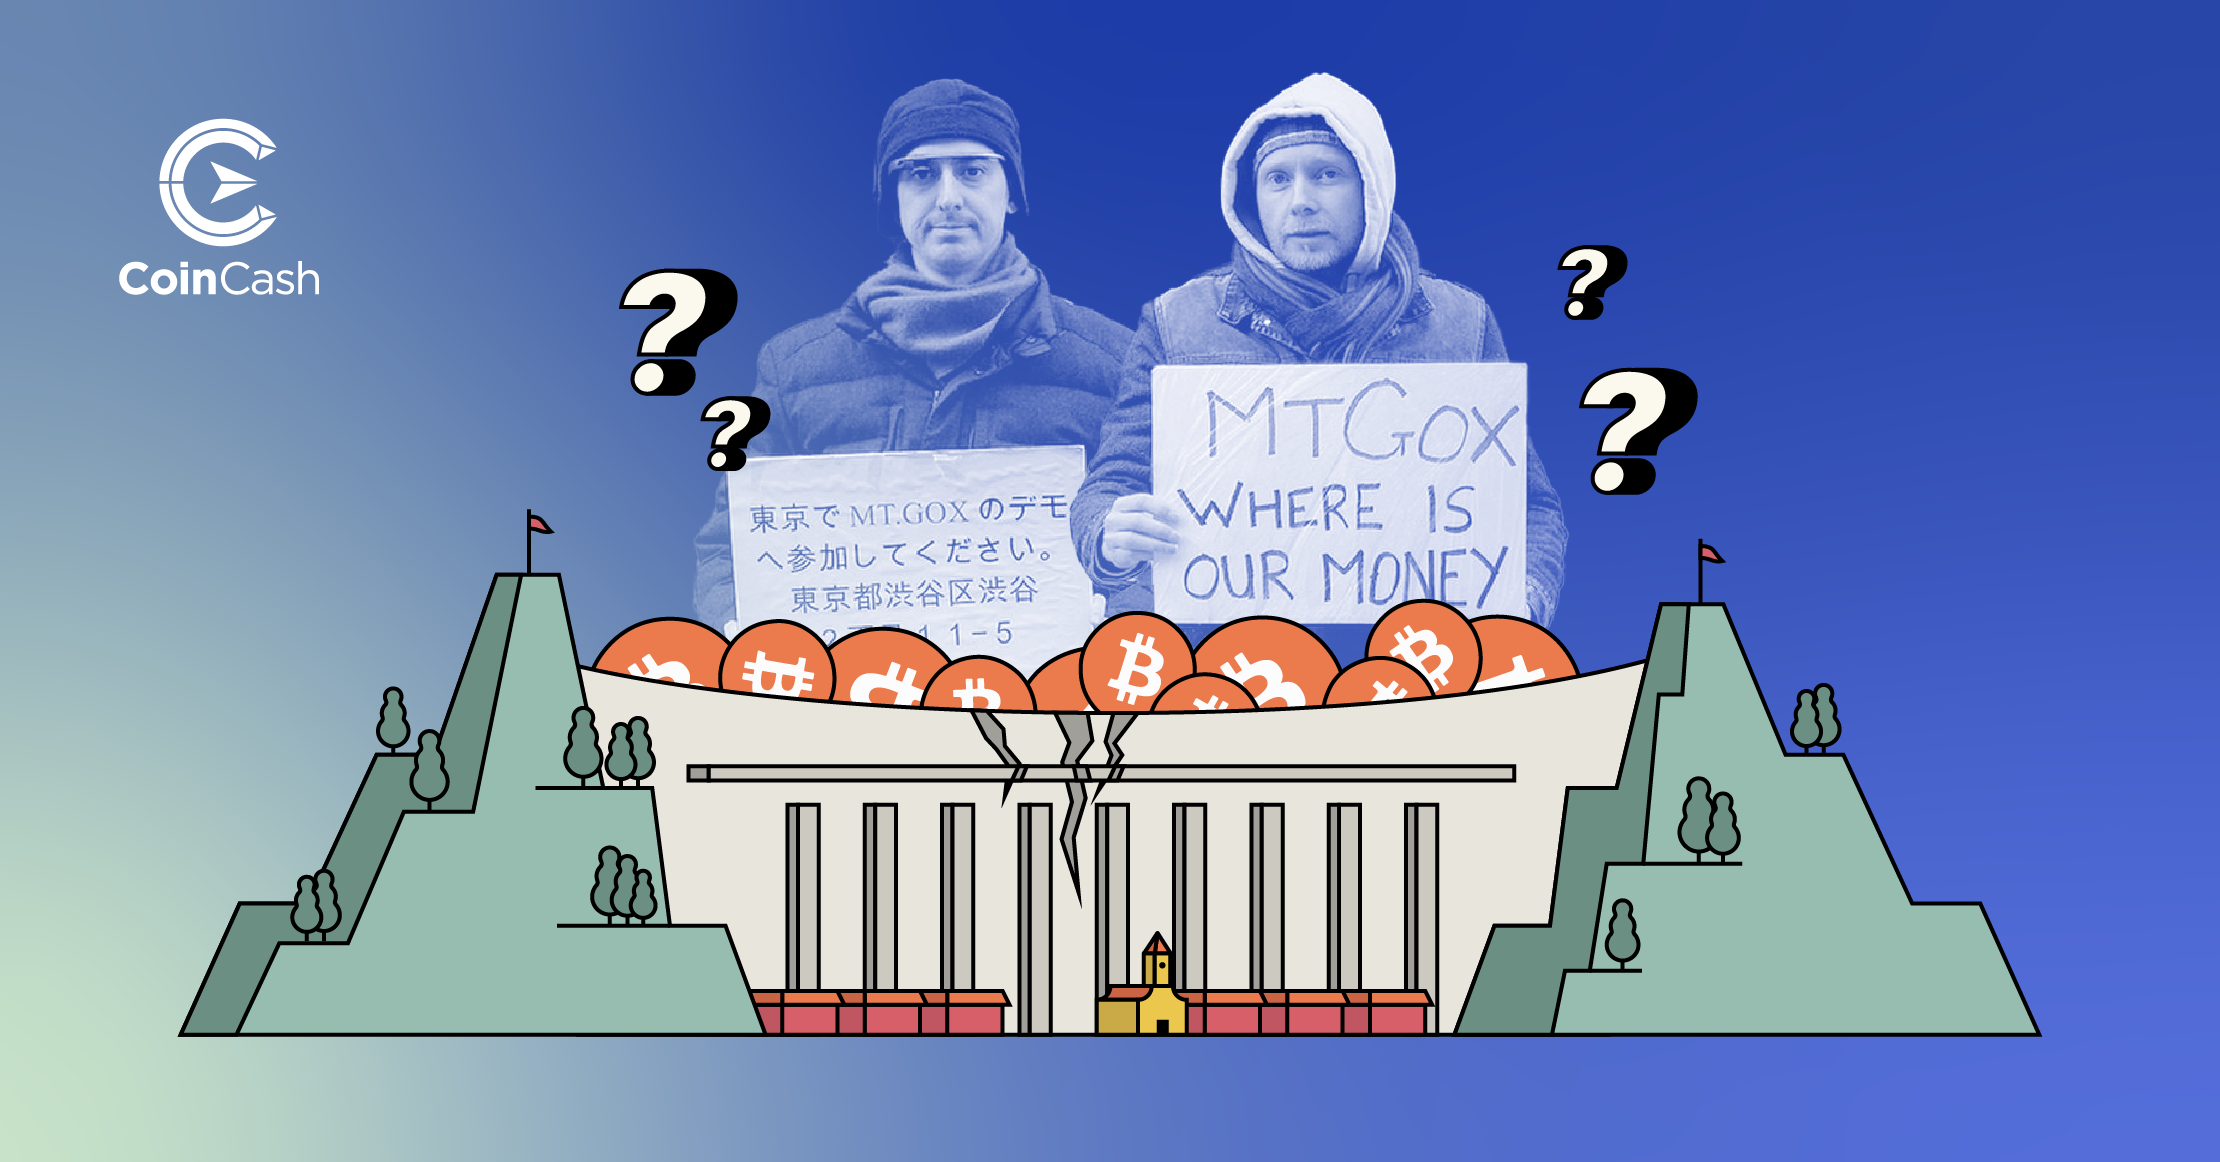 Gát mögé szorult bitcoinok, a háttérben két tüntetővel a Mt. Gox ügy kapcsán.